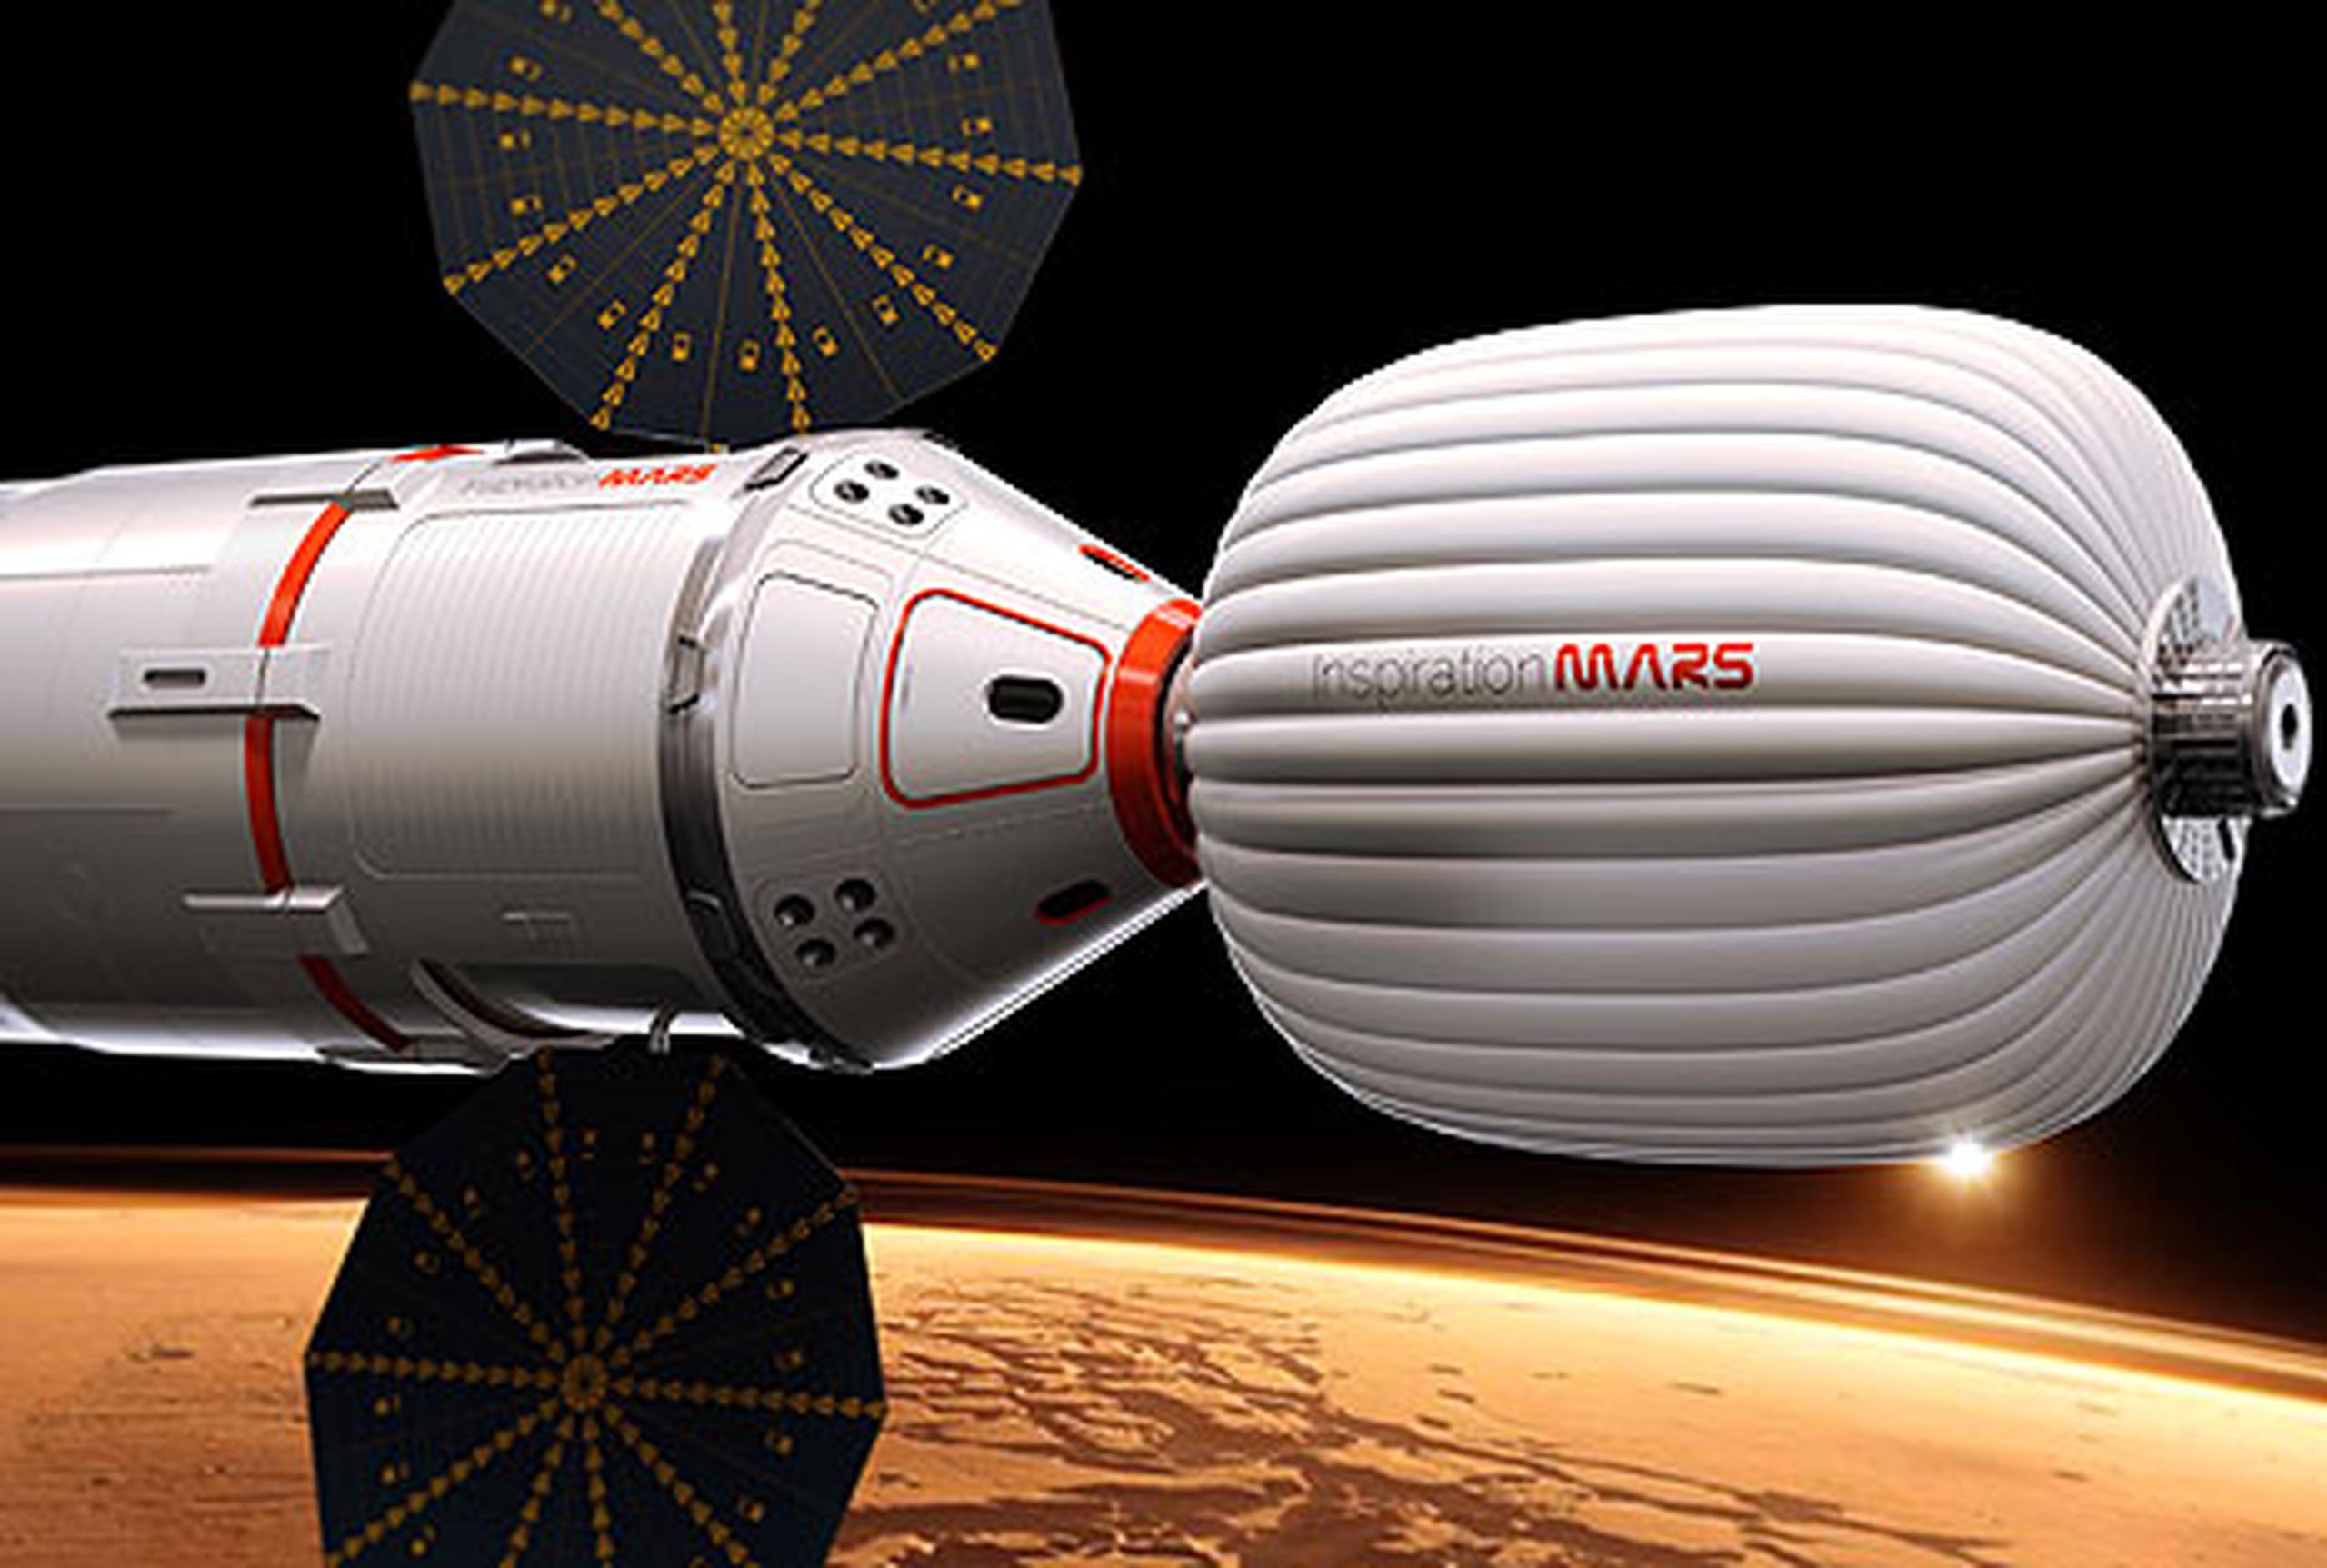 Los que respaldan el proyecto planean usar un cohete y cápsula espacial privados y algún tipo de hábitat que pudiera ser inflable, con un diseño austero que pudiera llevar dos personas a Marte por una fracción de lo que le costaría a la NASA hacerlo con robots, dijeron funcionarios. (AP)